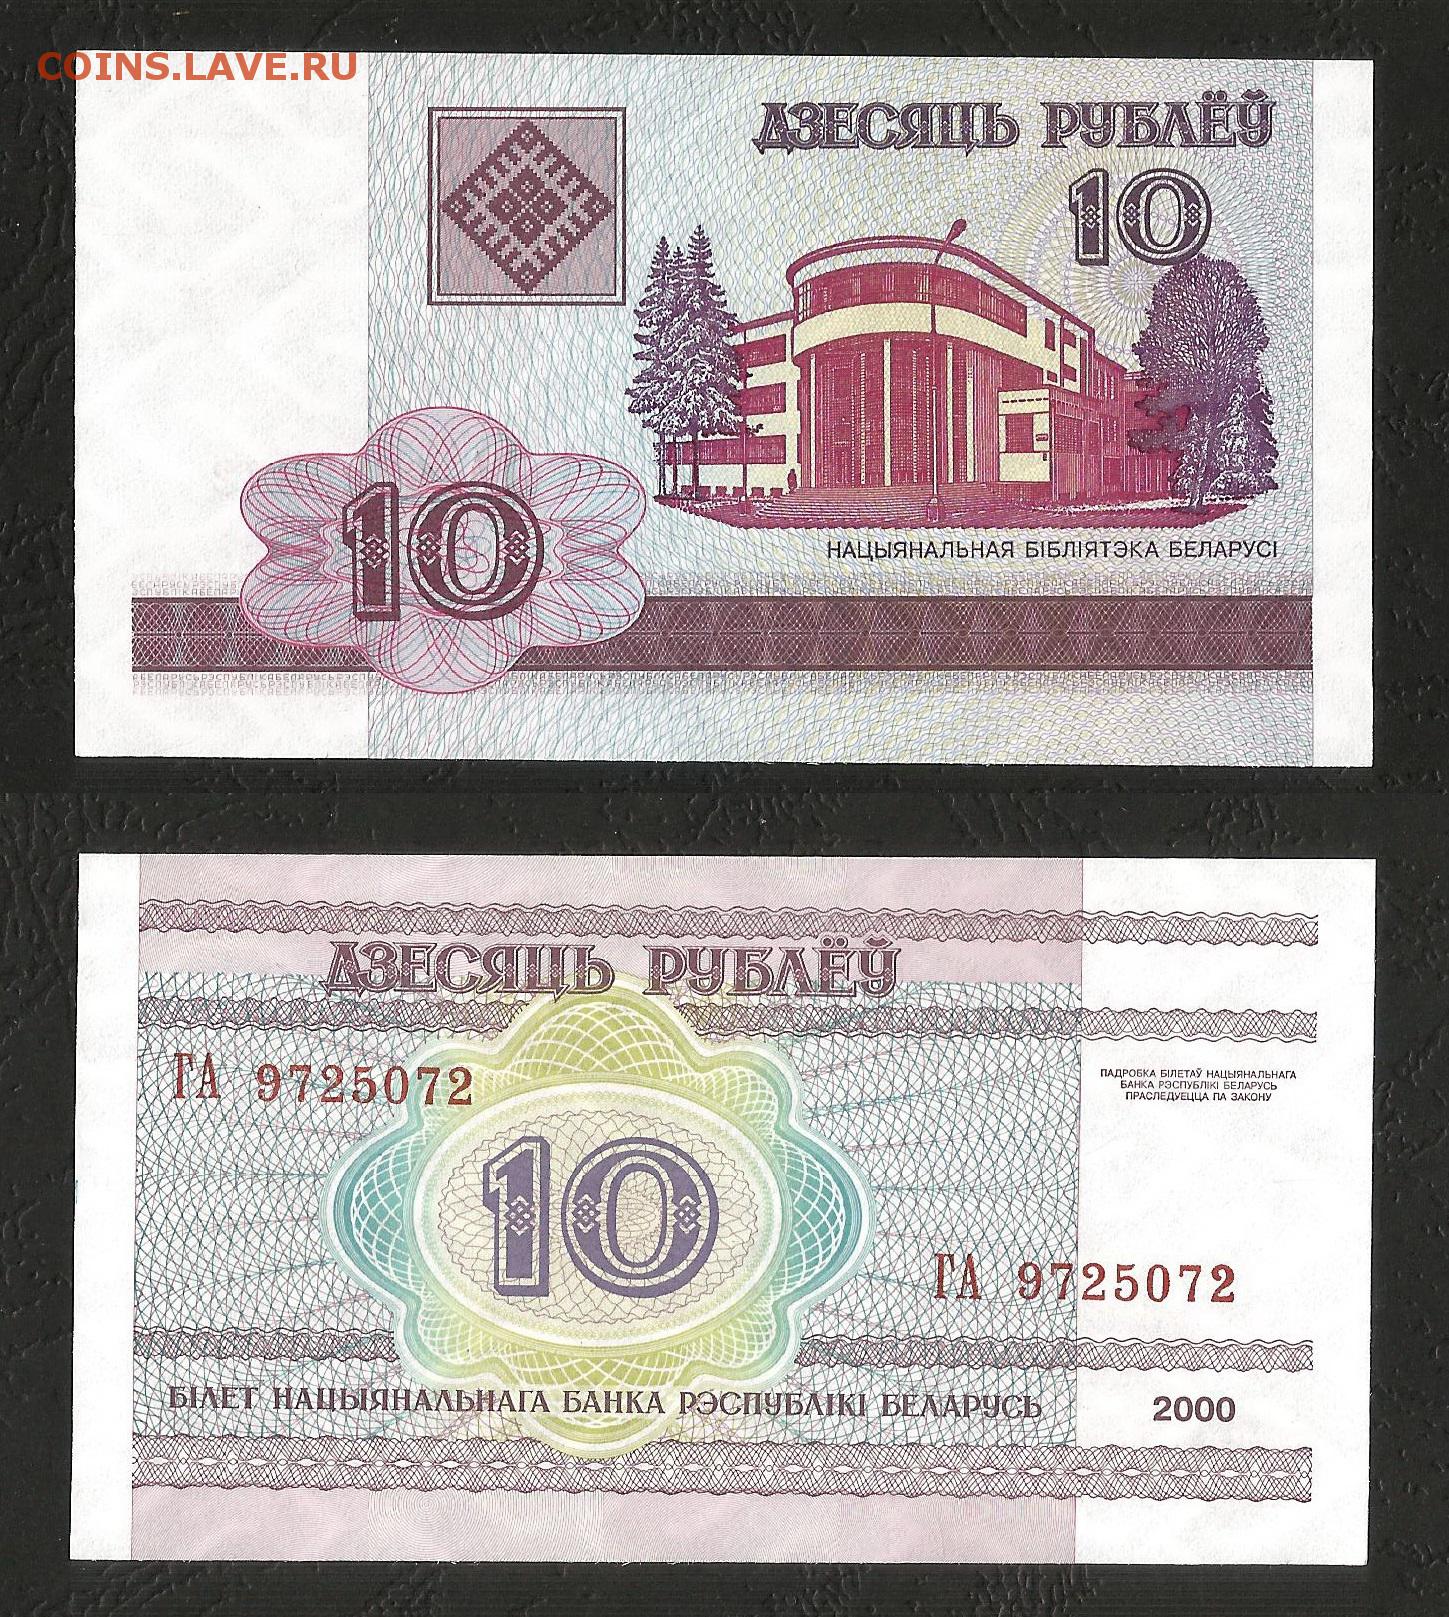 25000 российских рублей в белорусских рублях. Бона Беларусь 1 рубль 2000. Банкноты Беларуси 2000 года с защитной полосой.